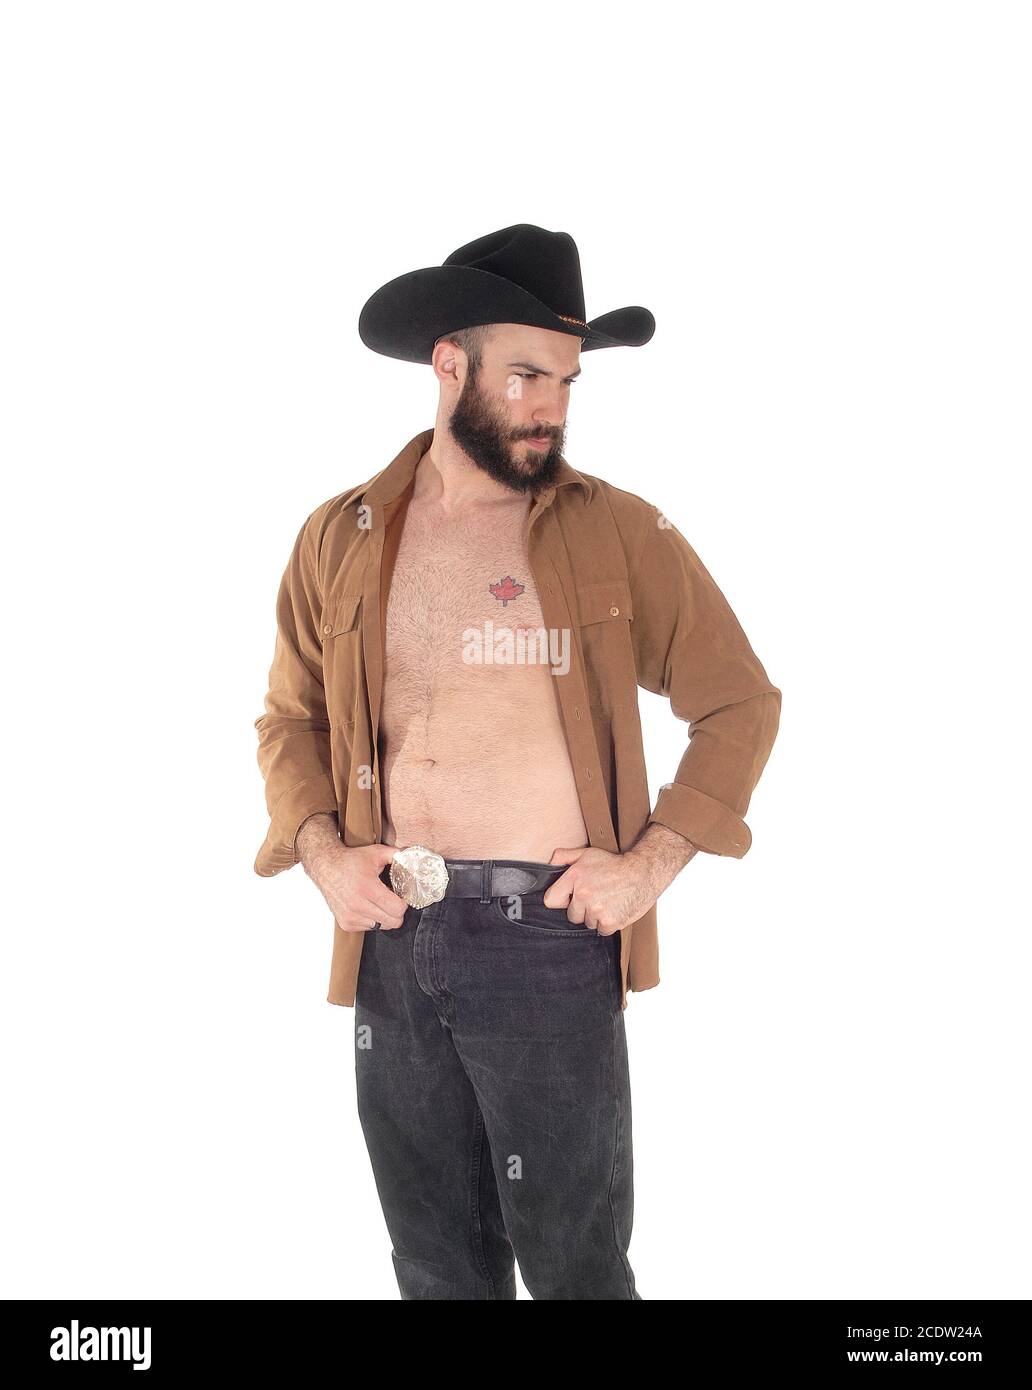 Joven con sombrero de cowboy y camisa abierta Foto de stock